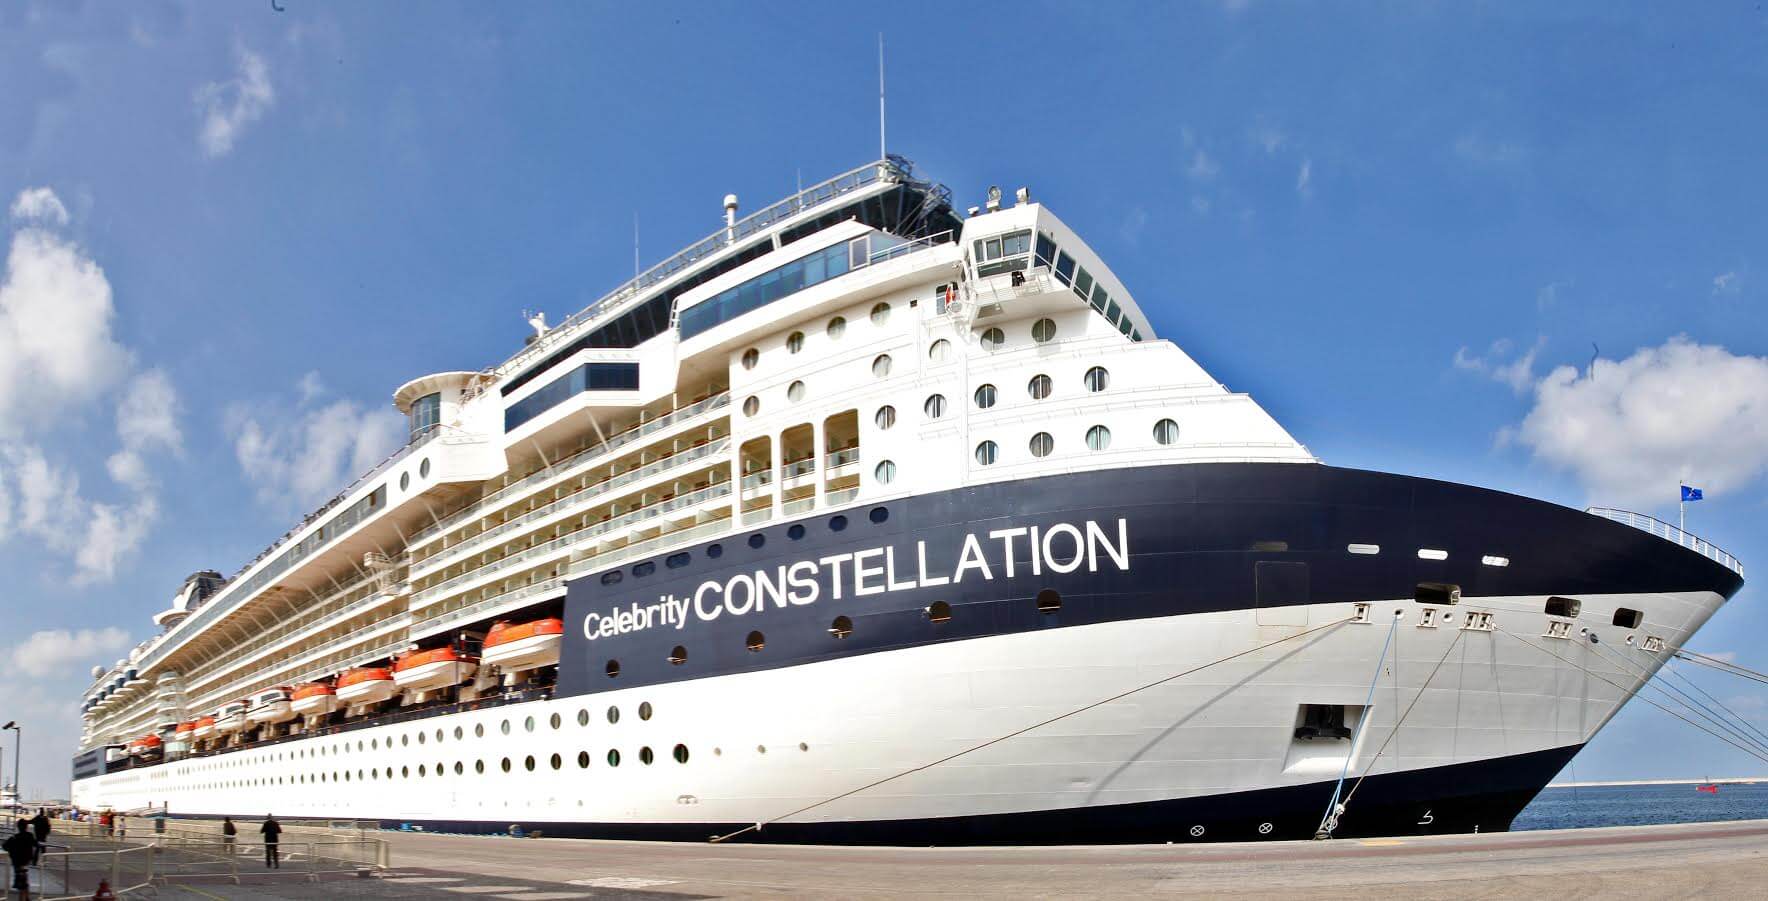 السفينة السياحية الفاخرة “سيليبرتي كونستيلاشن” تصل الى دبي